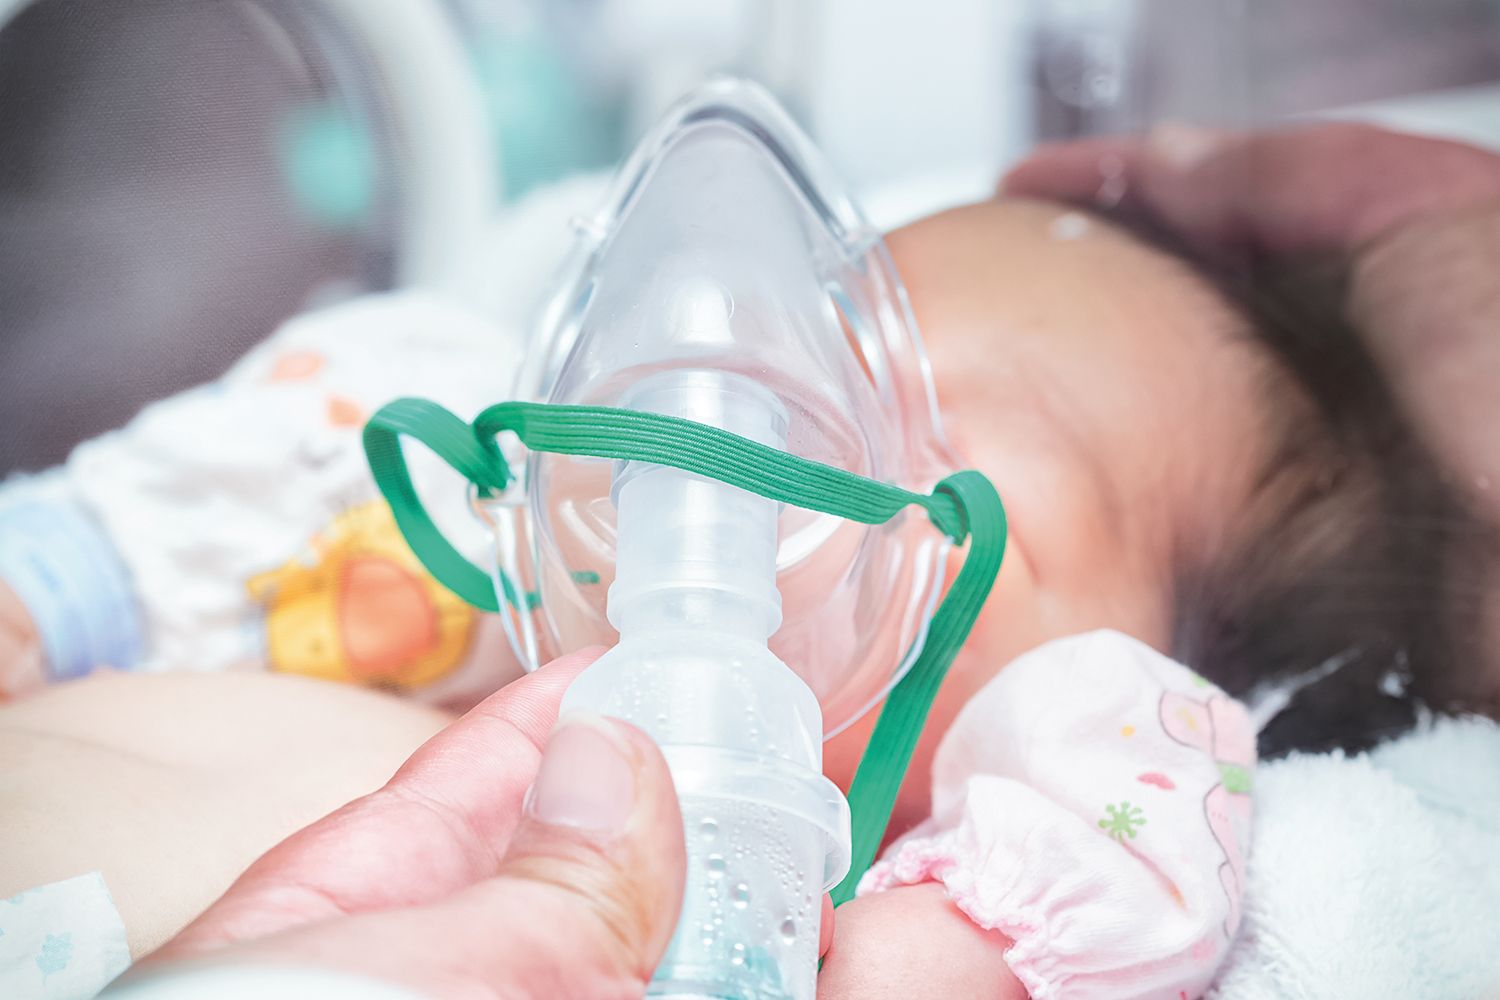 Suplimentarea cu oxigen în perioada neonatală